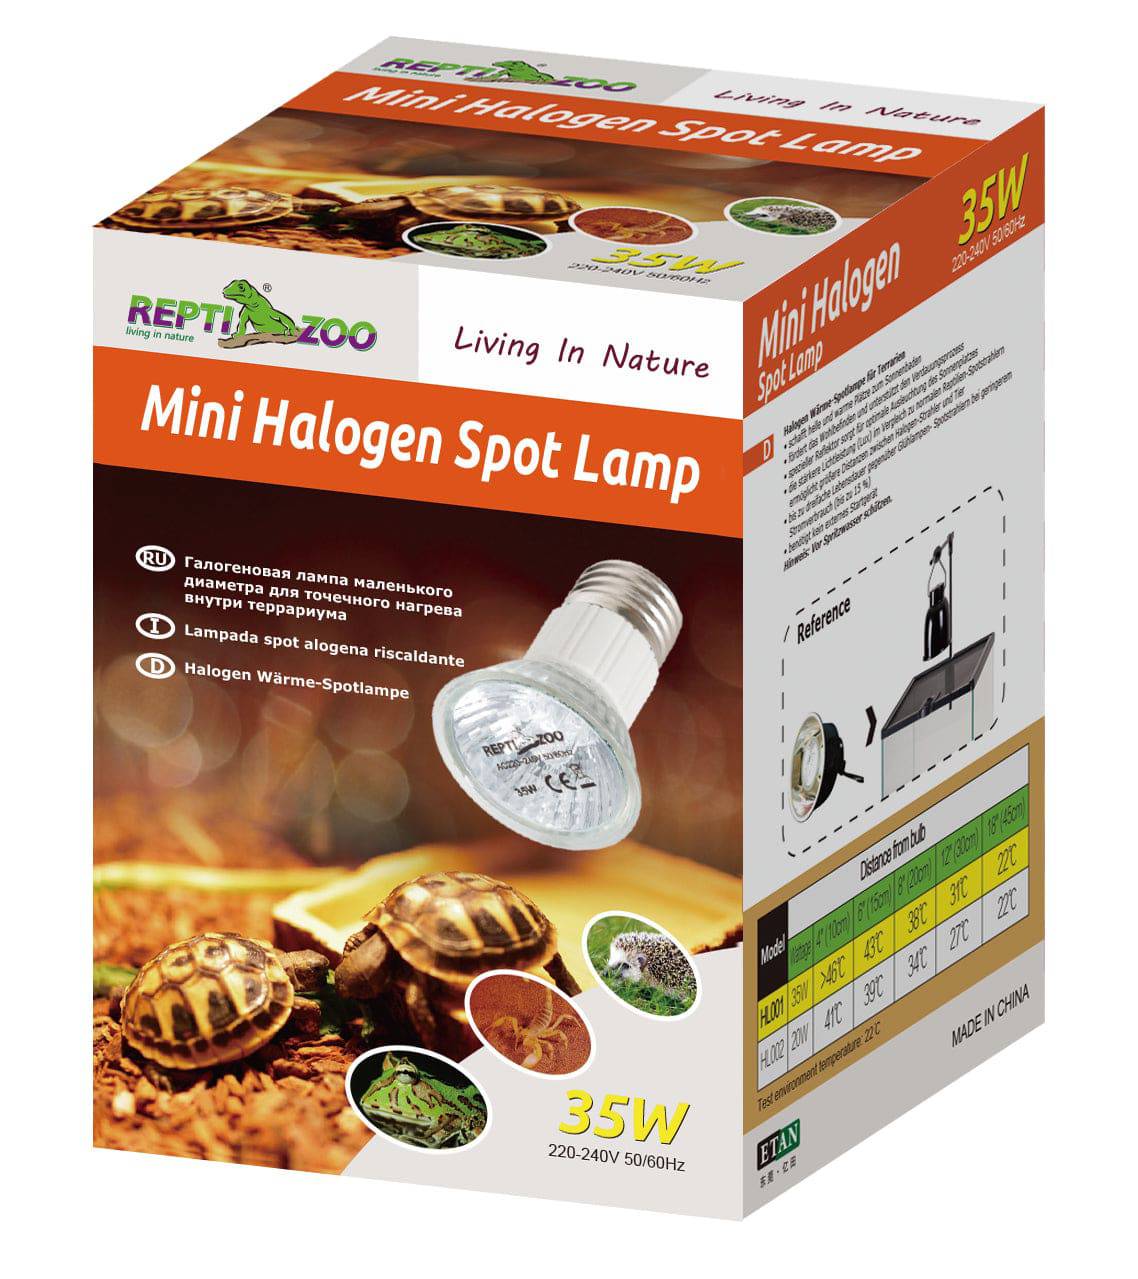 REPTIZOO - Mini Halogen Spot Lamps (HL001) - Reptile Deli Inc.